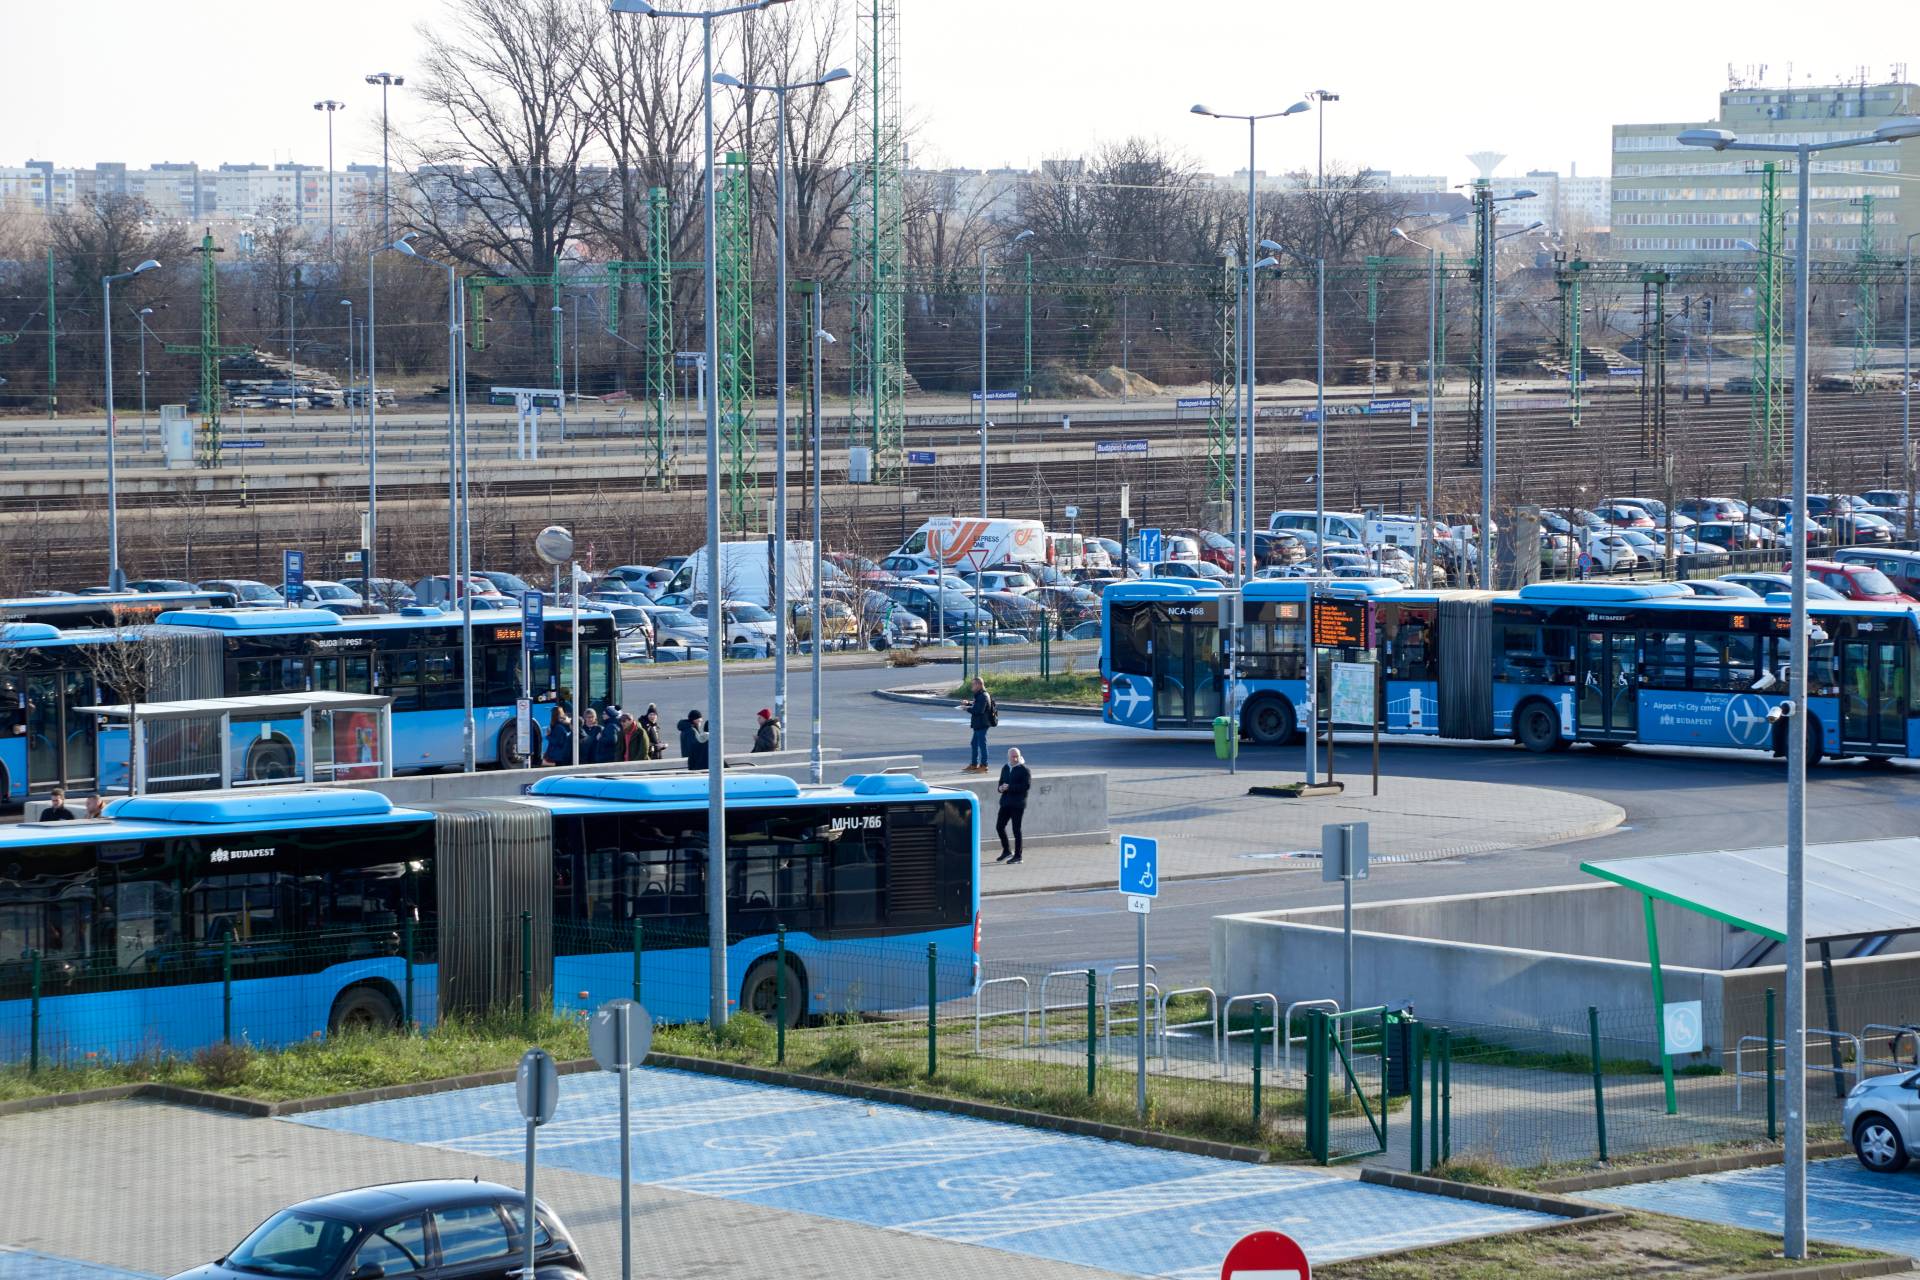 Több mint 30 budapesti buszon is külön bérletet kell venni, ha márciustól nem lesz használható a Budapest-bérlet